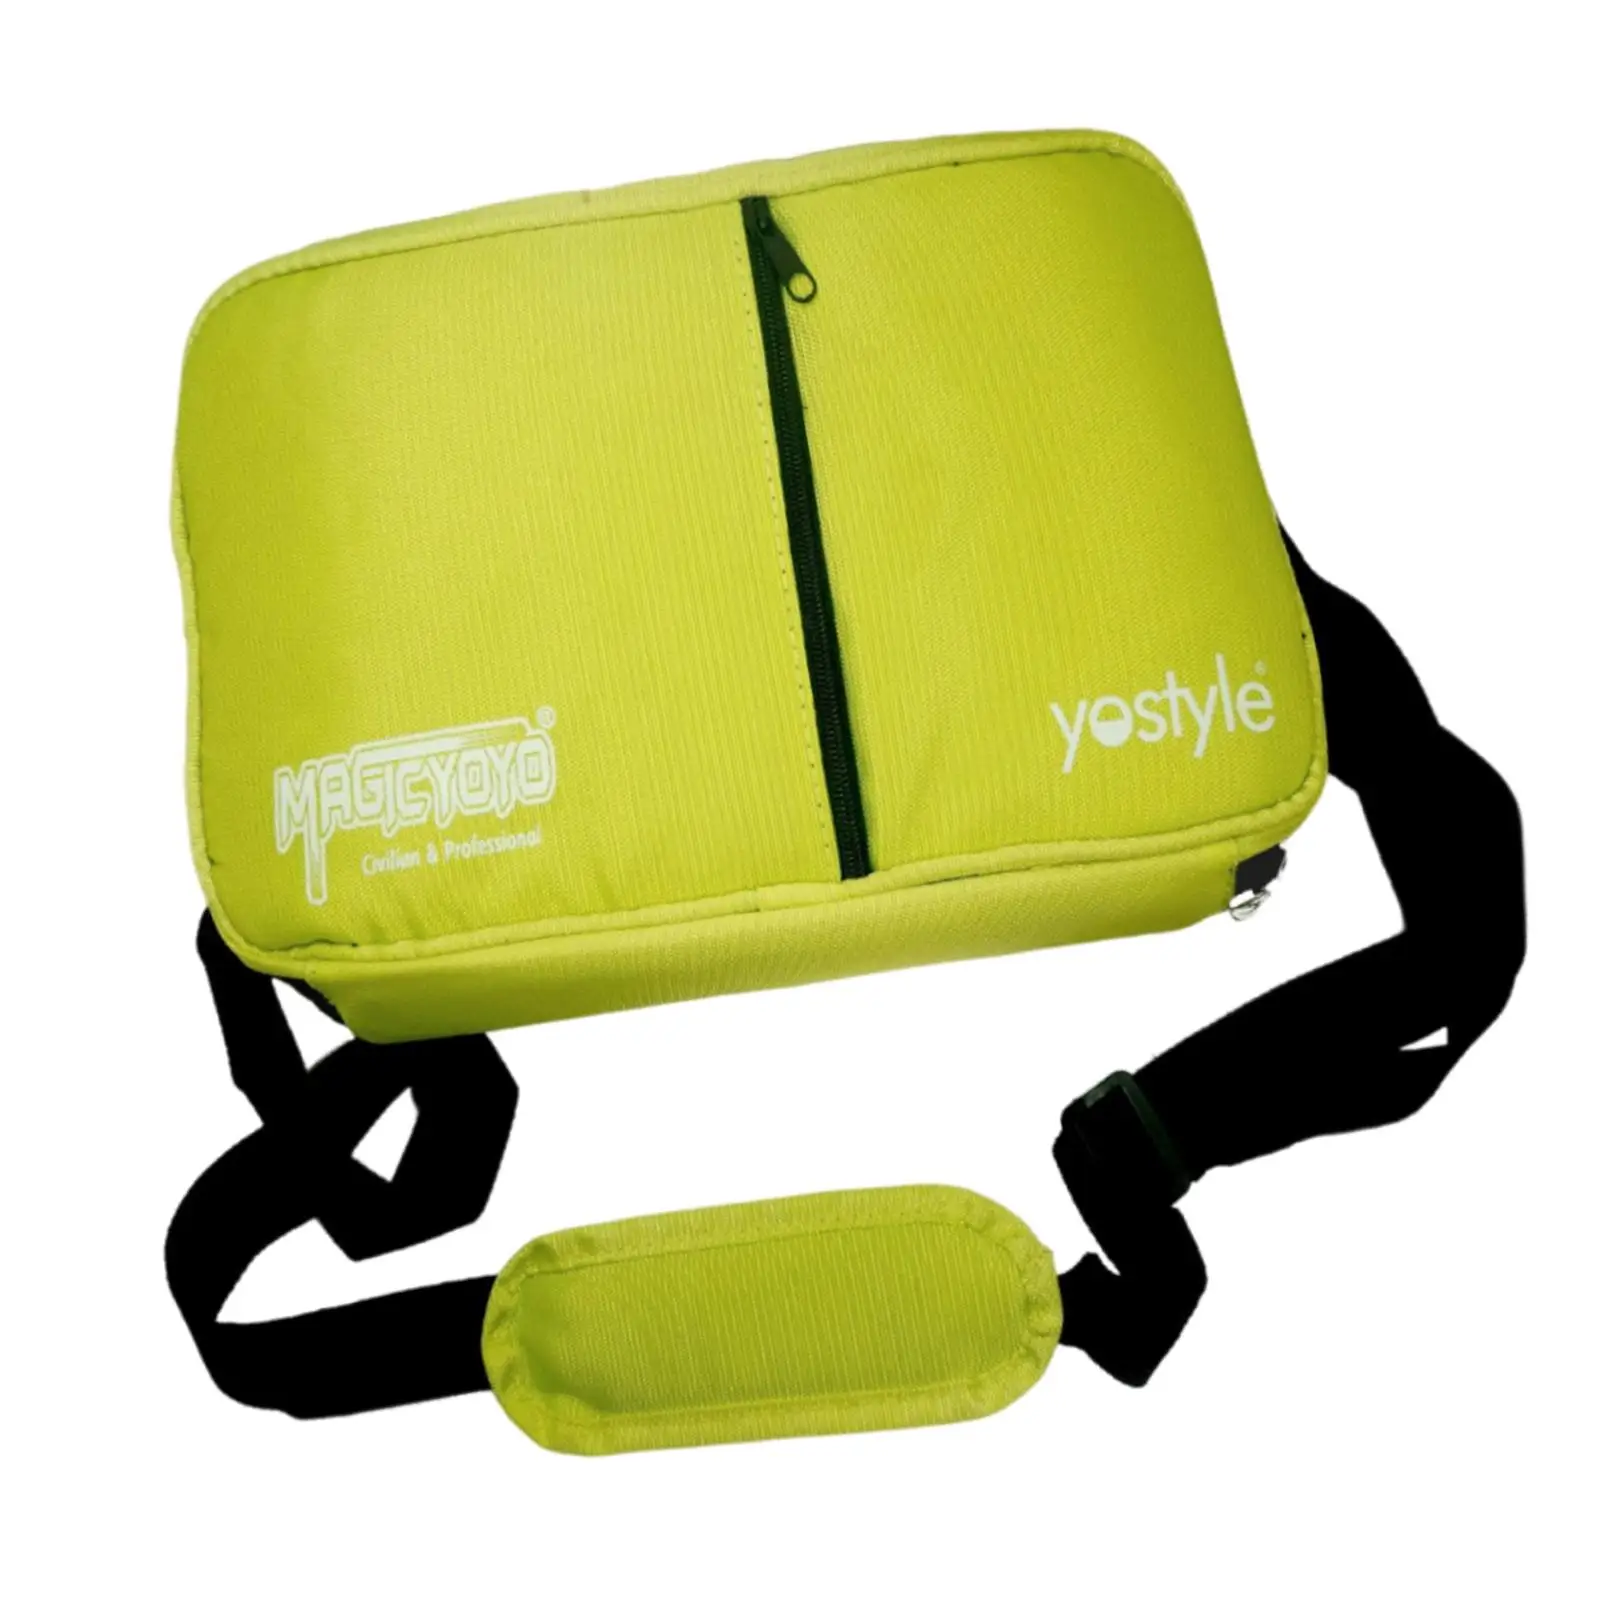 Yoyo Bag Storage Bag Case Satchel Portable Outdoor Equipment